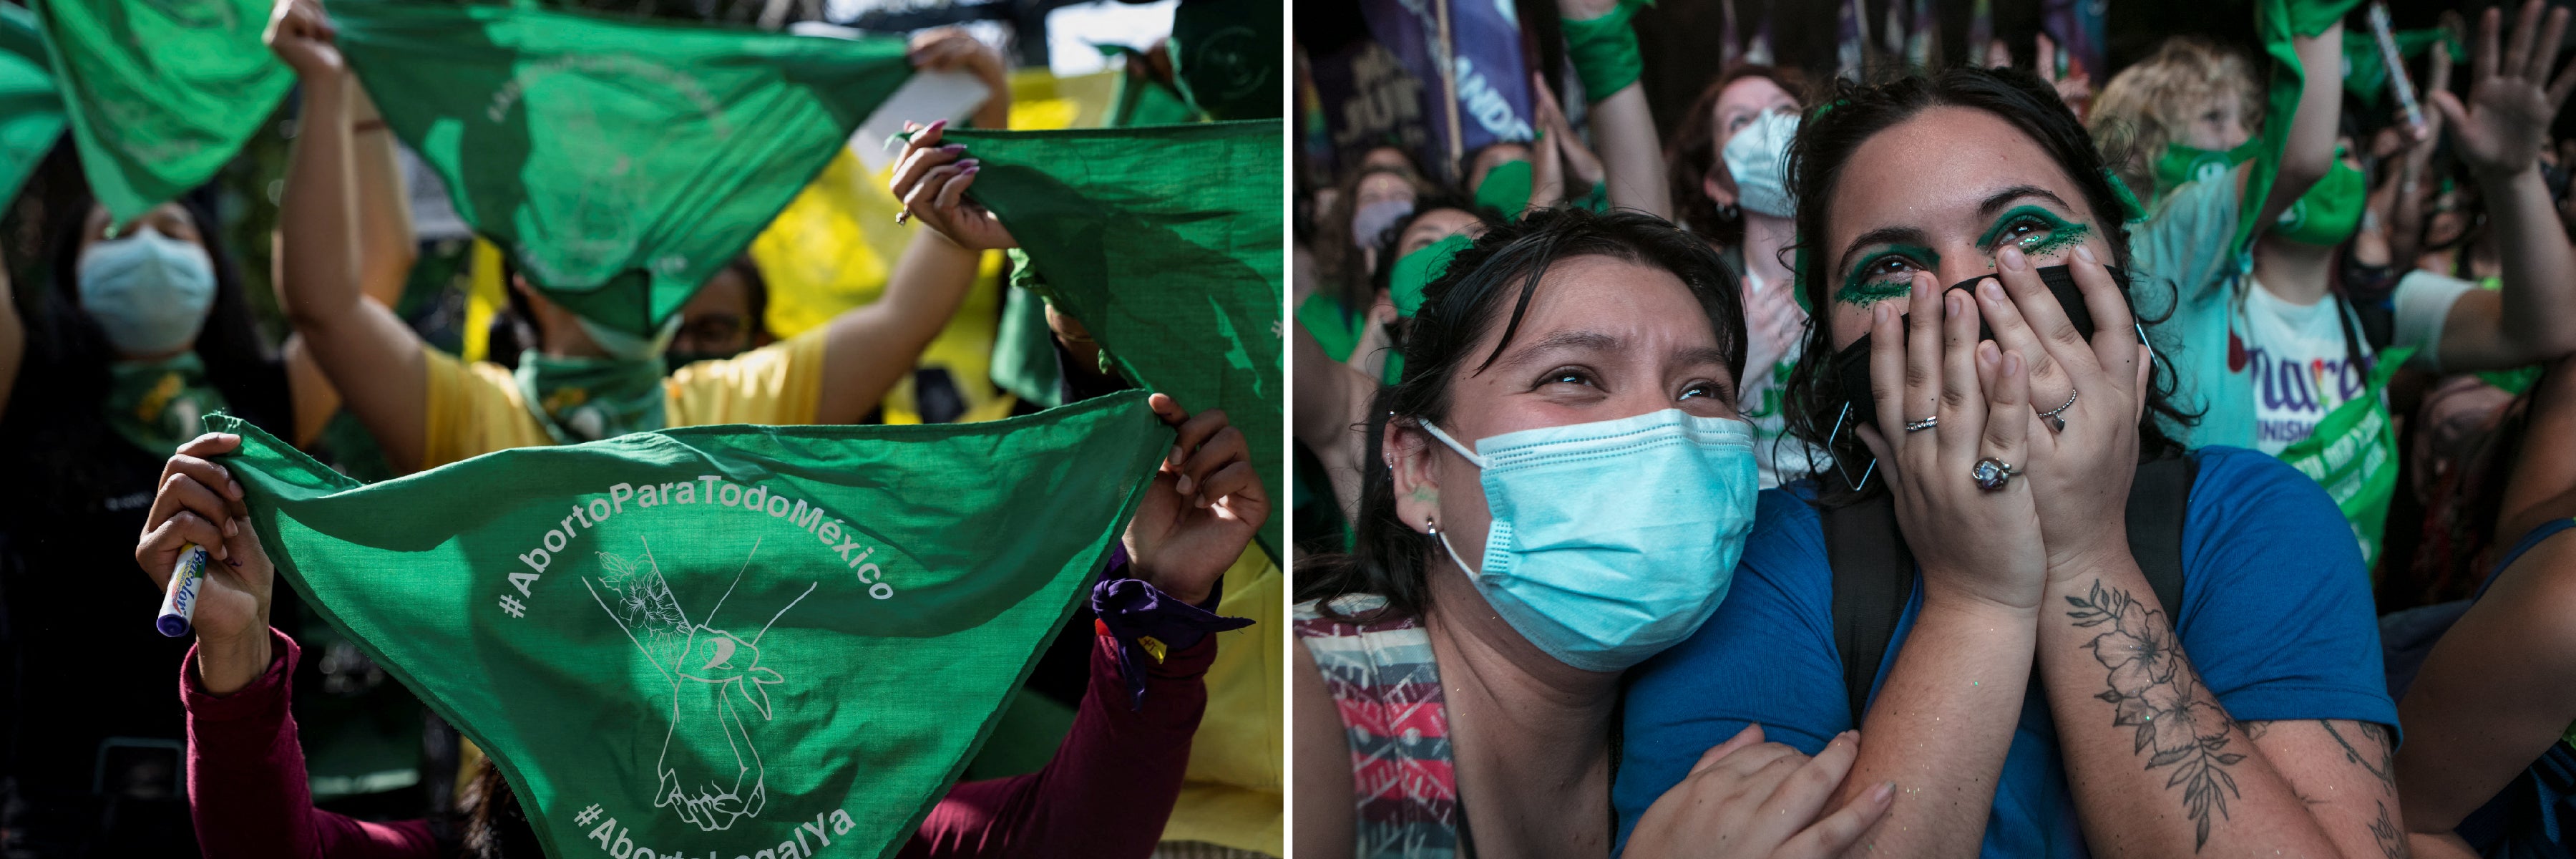 من اليسار: متظاهرة مؤيدة لحقوق الإجهاض ترفع منديلا أخضر كُتب عليه "الإجهاض لكل المكسيك" أثناء احتجاج أمام السفارة الأمريكية في مكسيكو سيتي، لدعم حقوق الإجهاض، 29 يونيو/حزيران 2022. © 2022 تويا سارنو جوردان/رويترز من اليمين: متظاهرات مؤيدات لحق اختيار الإجهاض يحتفلن، بينما يناقش الكونغرس الأرجنتيني مشروع قانون لتشريع الإجهاض في 29 ديسمبر/كانون الأول 2020، في بوينس آيرس. وافق الكونغرس على مشروع القانون في 30 ديسمبر/كانون الأول 2020. © 2020 ريكاردو سيبي/غيتي إيمجز